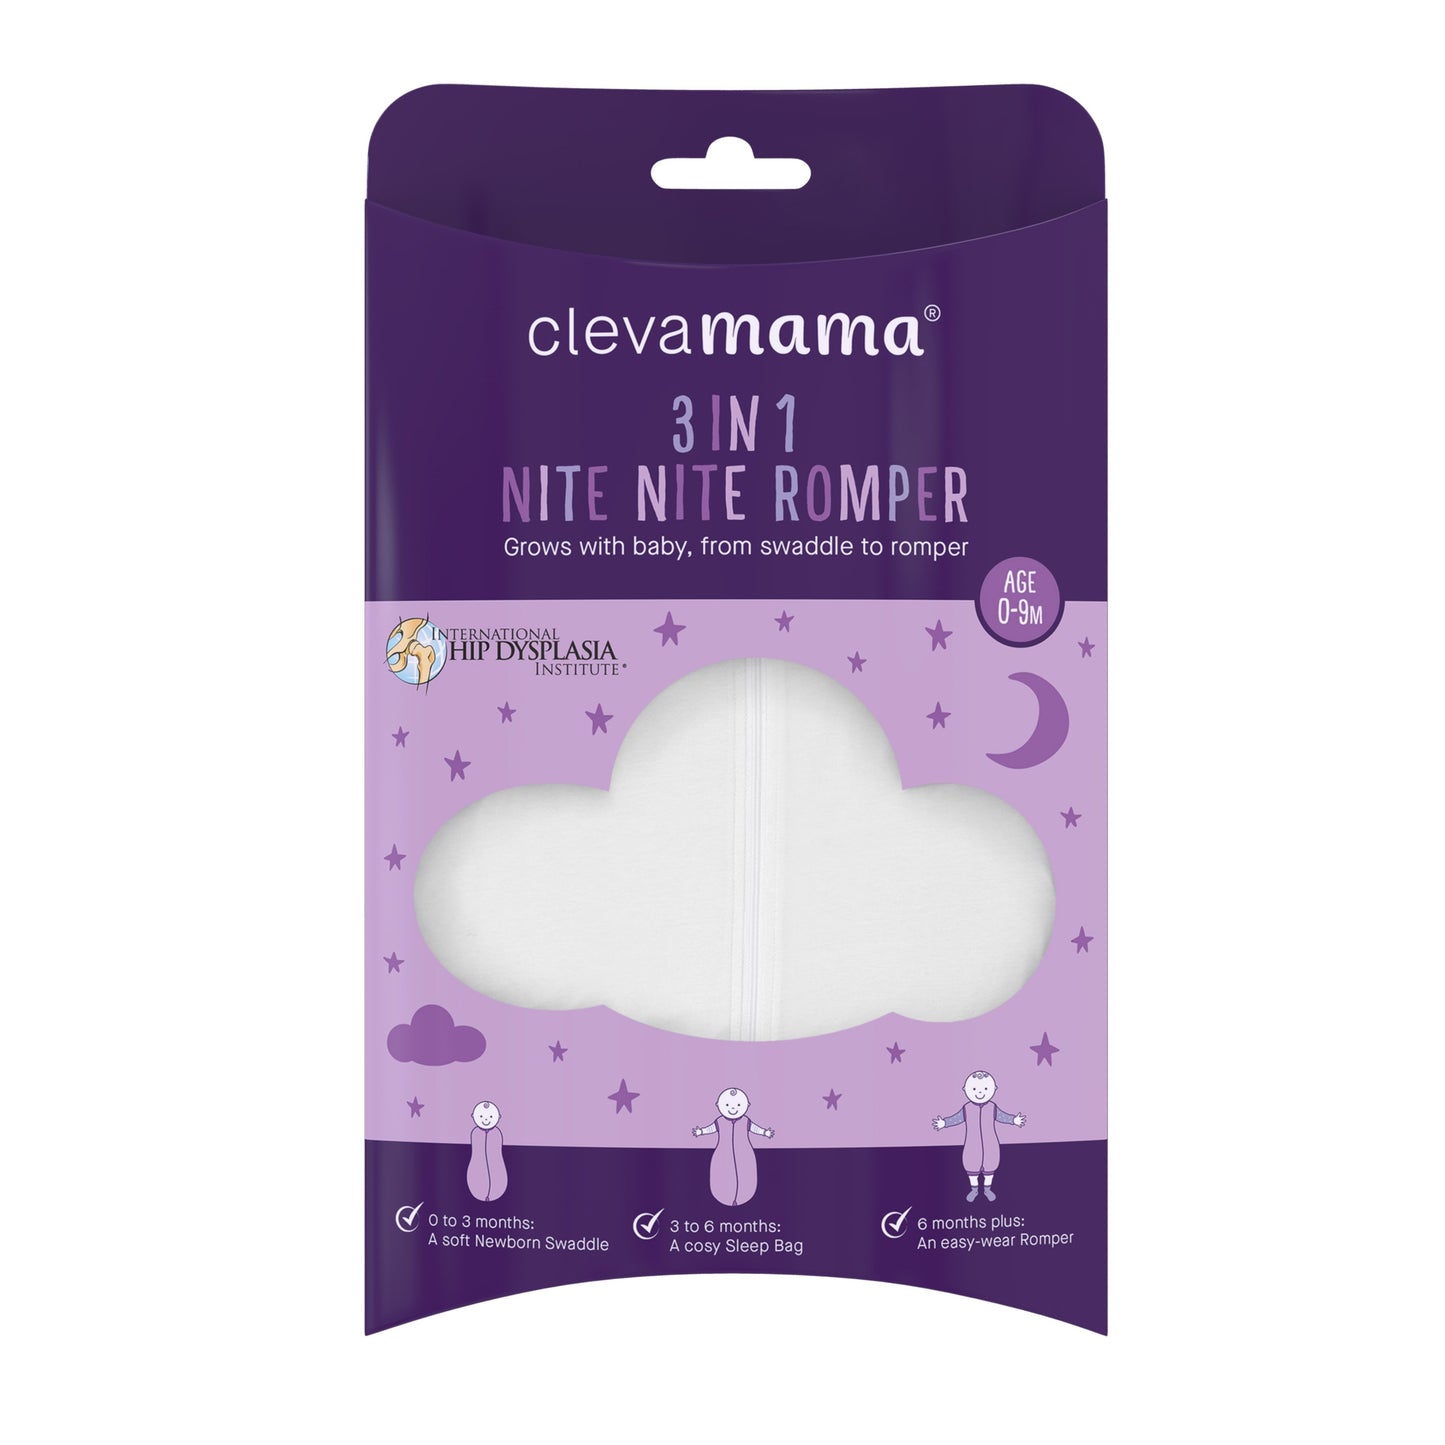 Clevamama 3 in 1 Nite Nite Romper - Swaddle, Sleep Bag & Baby Romper